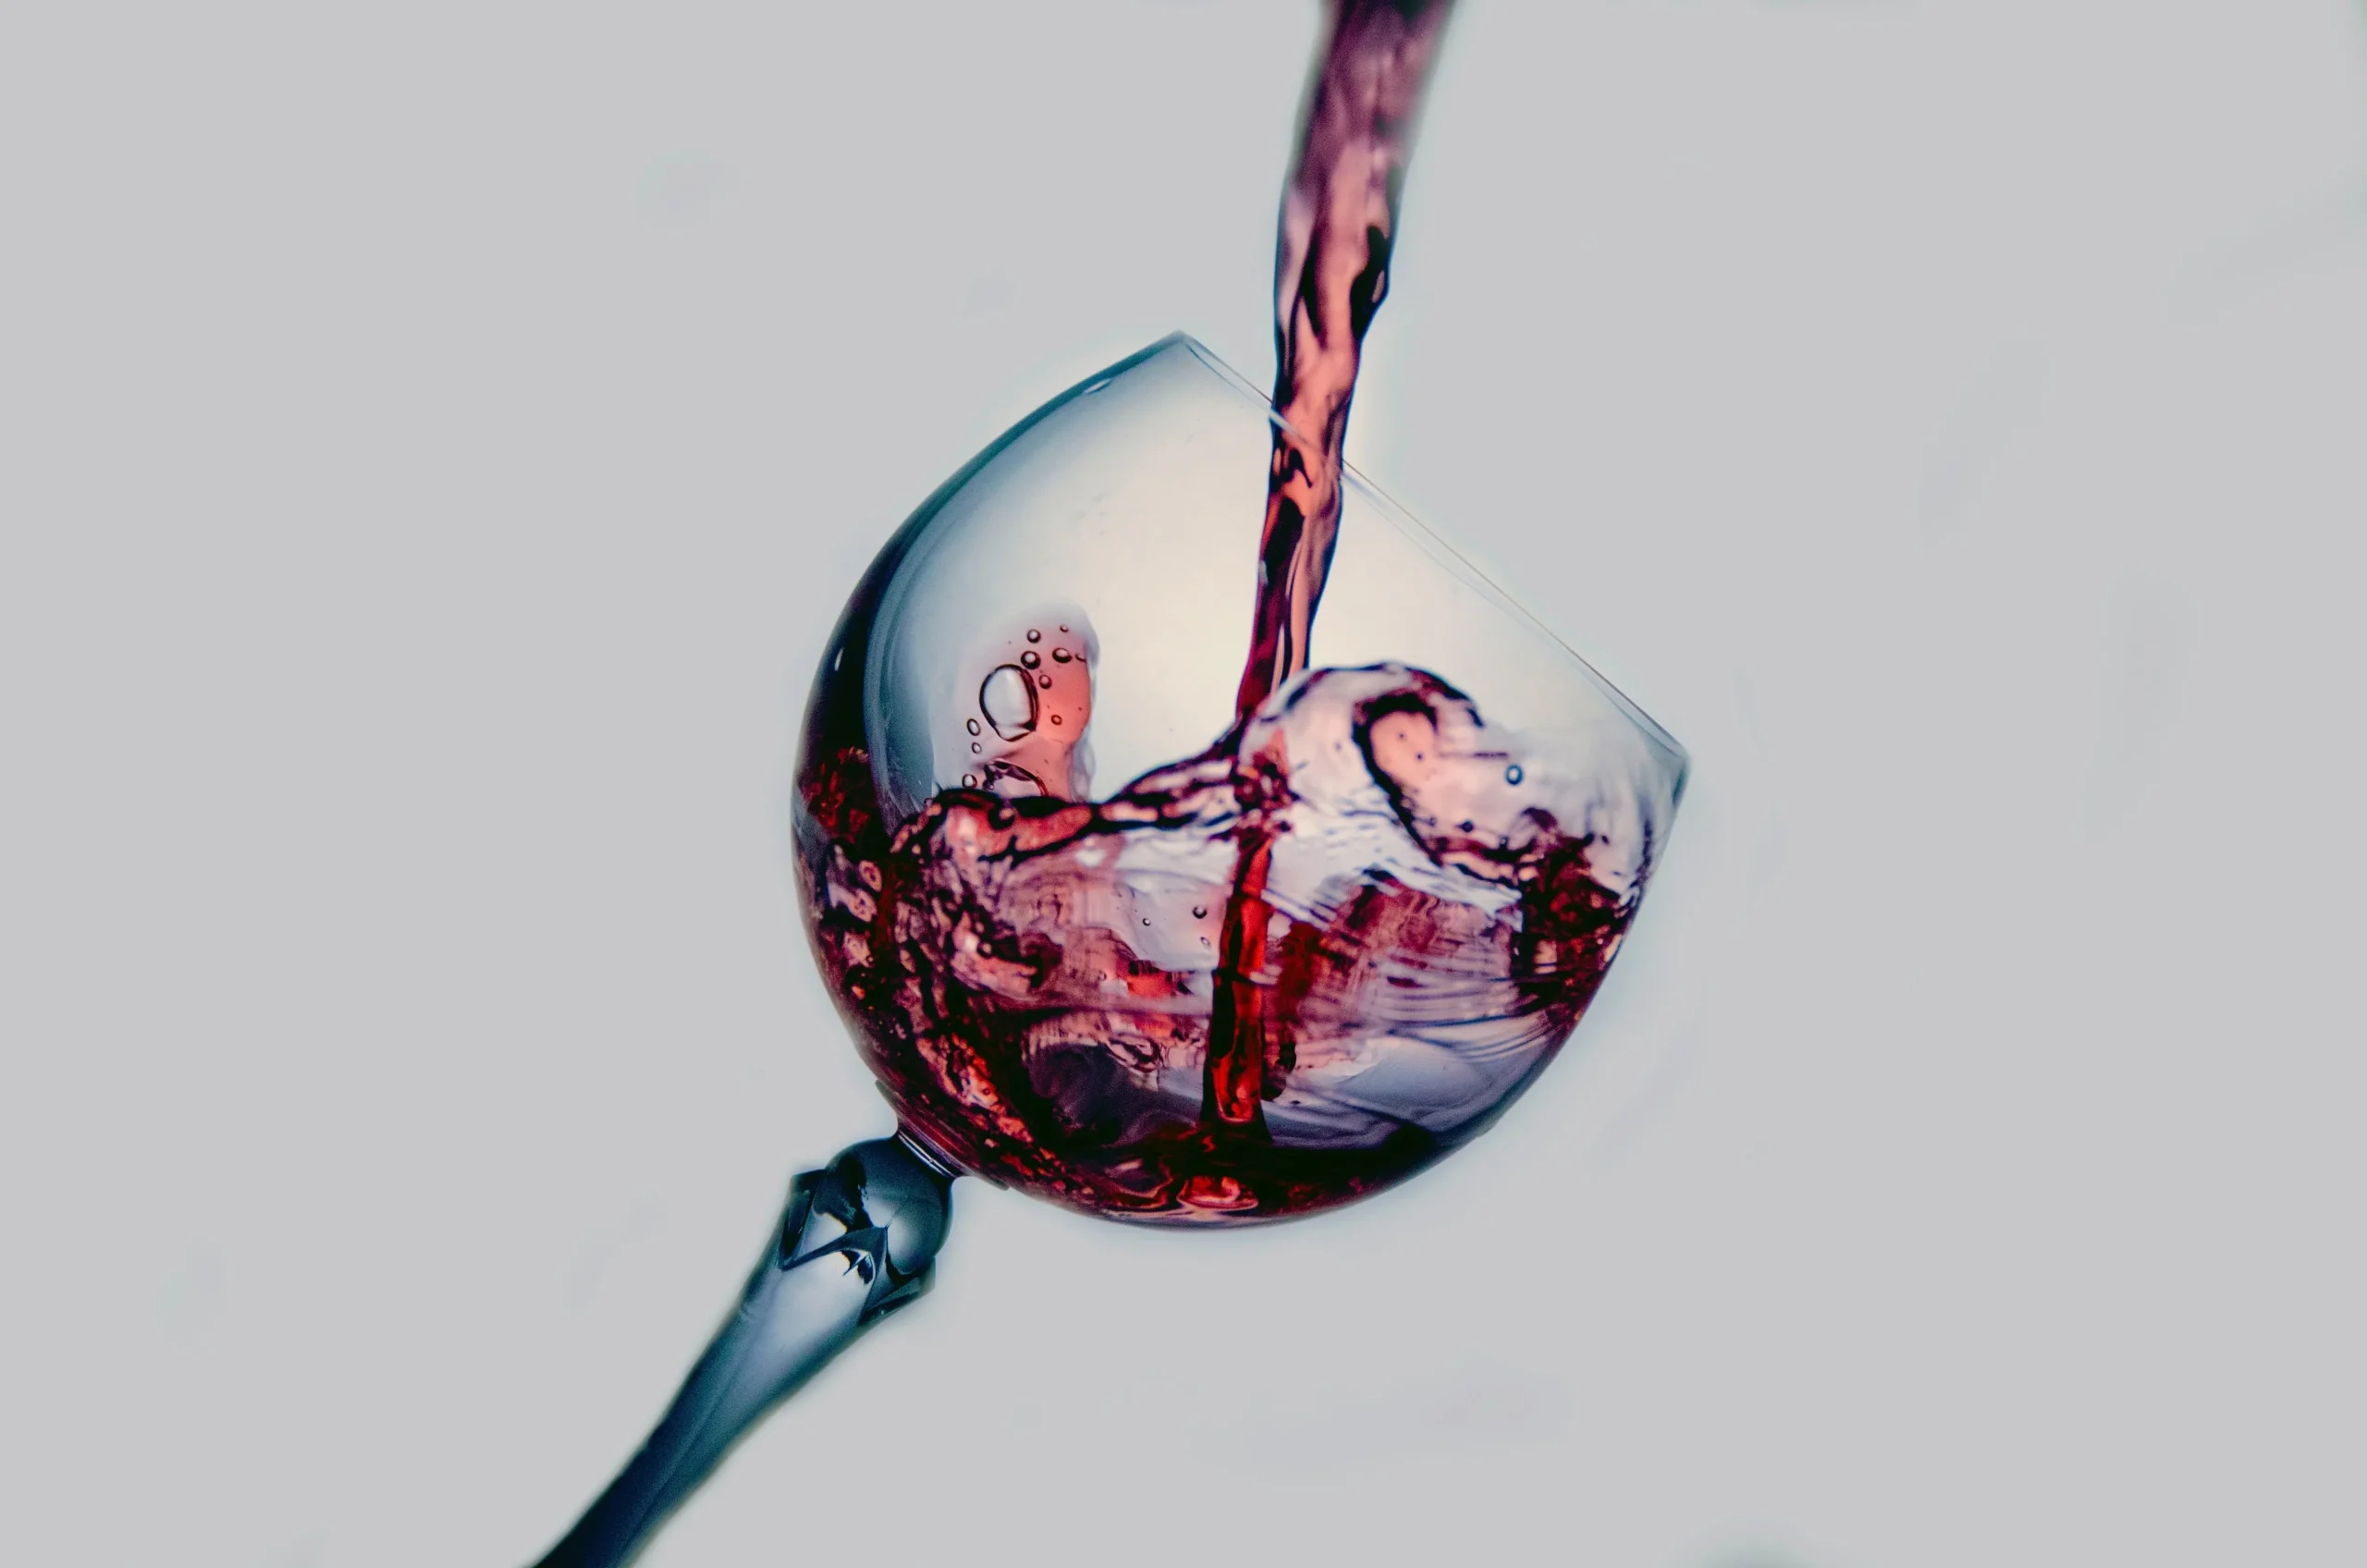 Características de las vinotecas 12 botellas